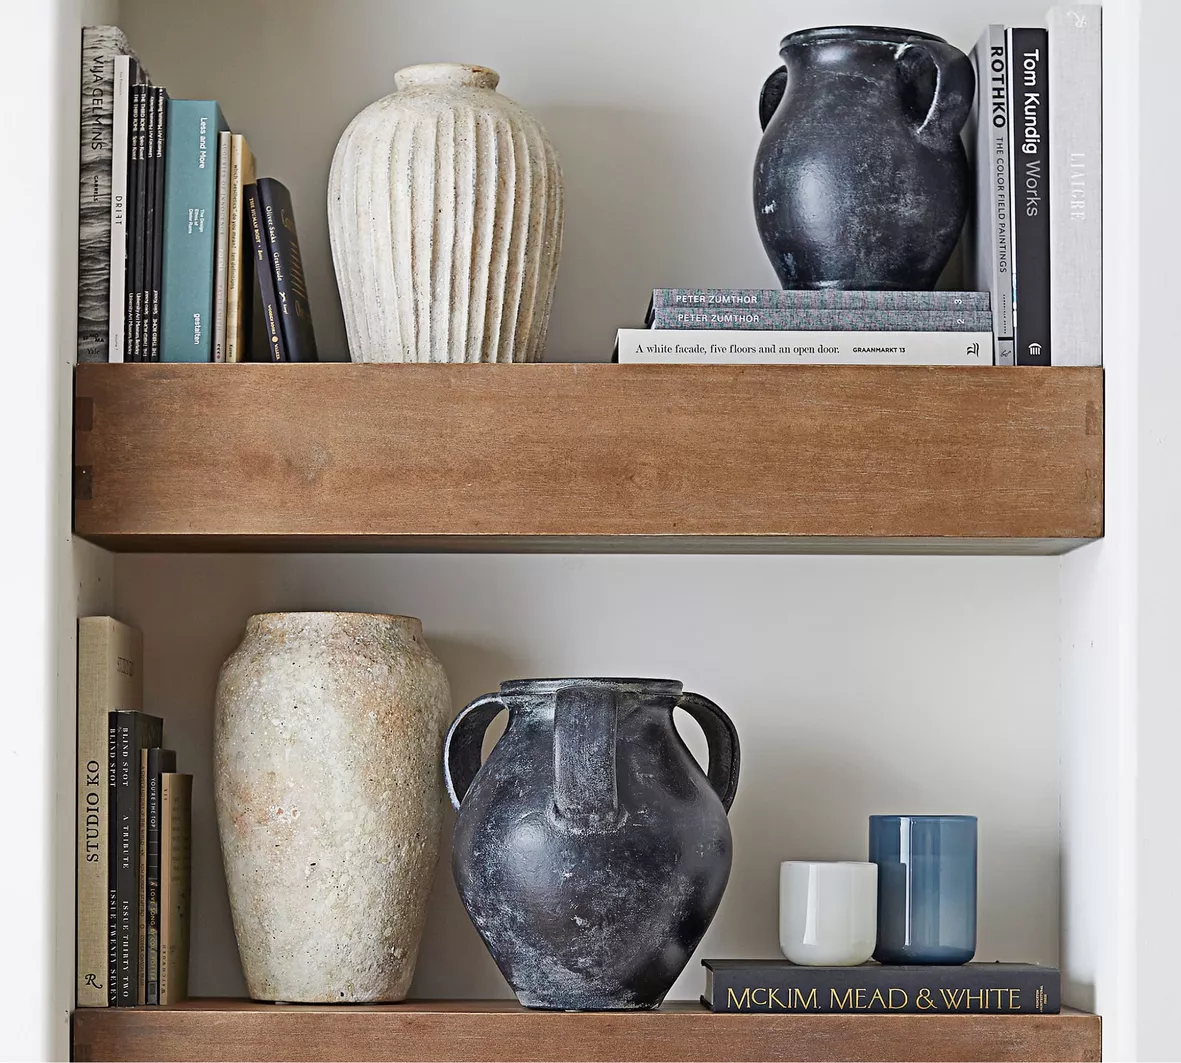 Frasier Handcrafted Ceramic Vase curated on LTK